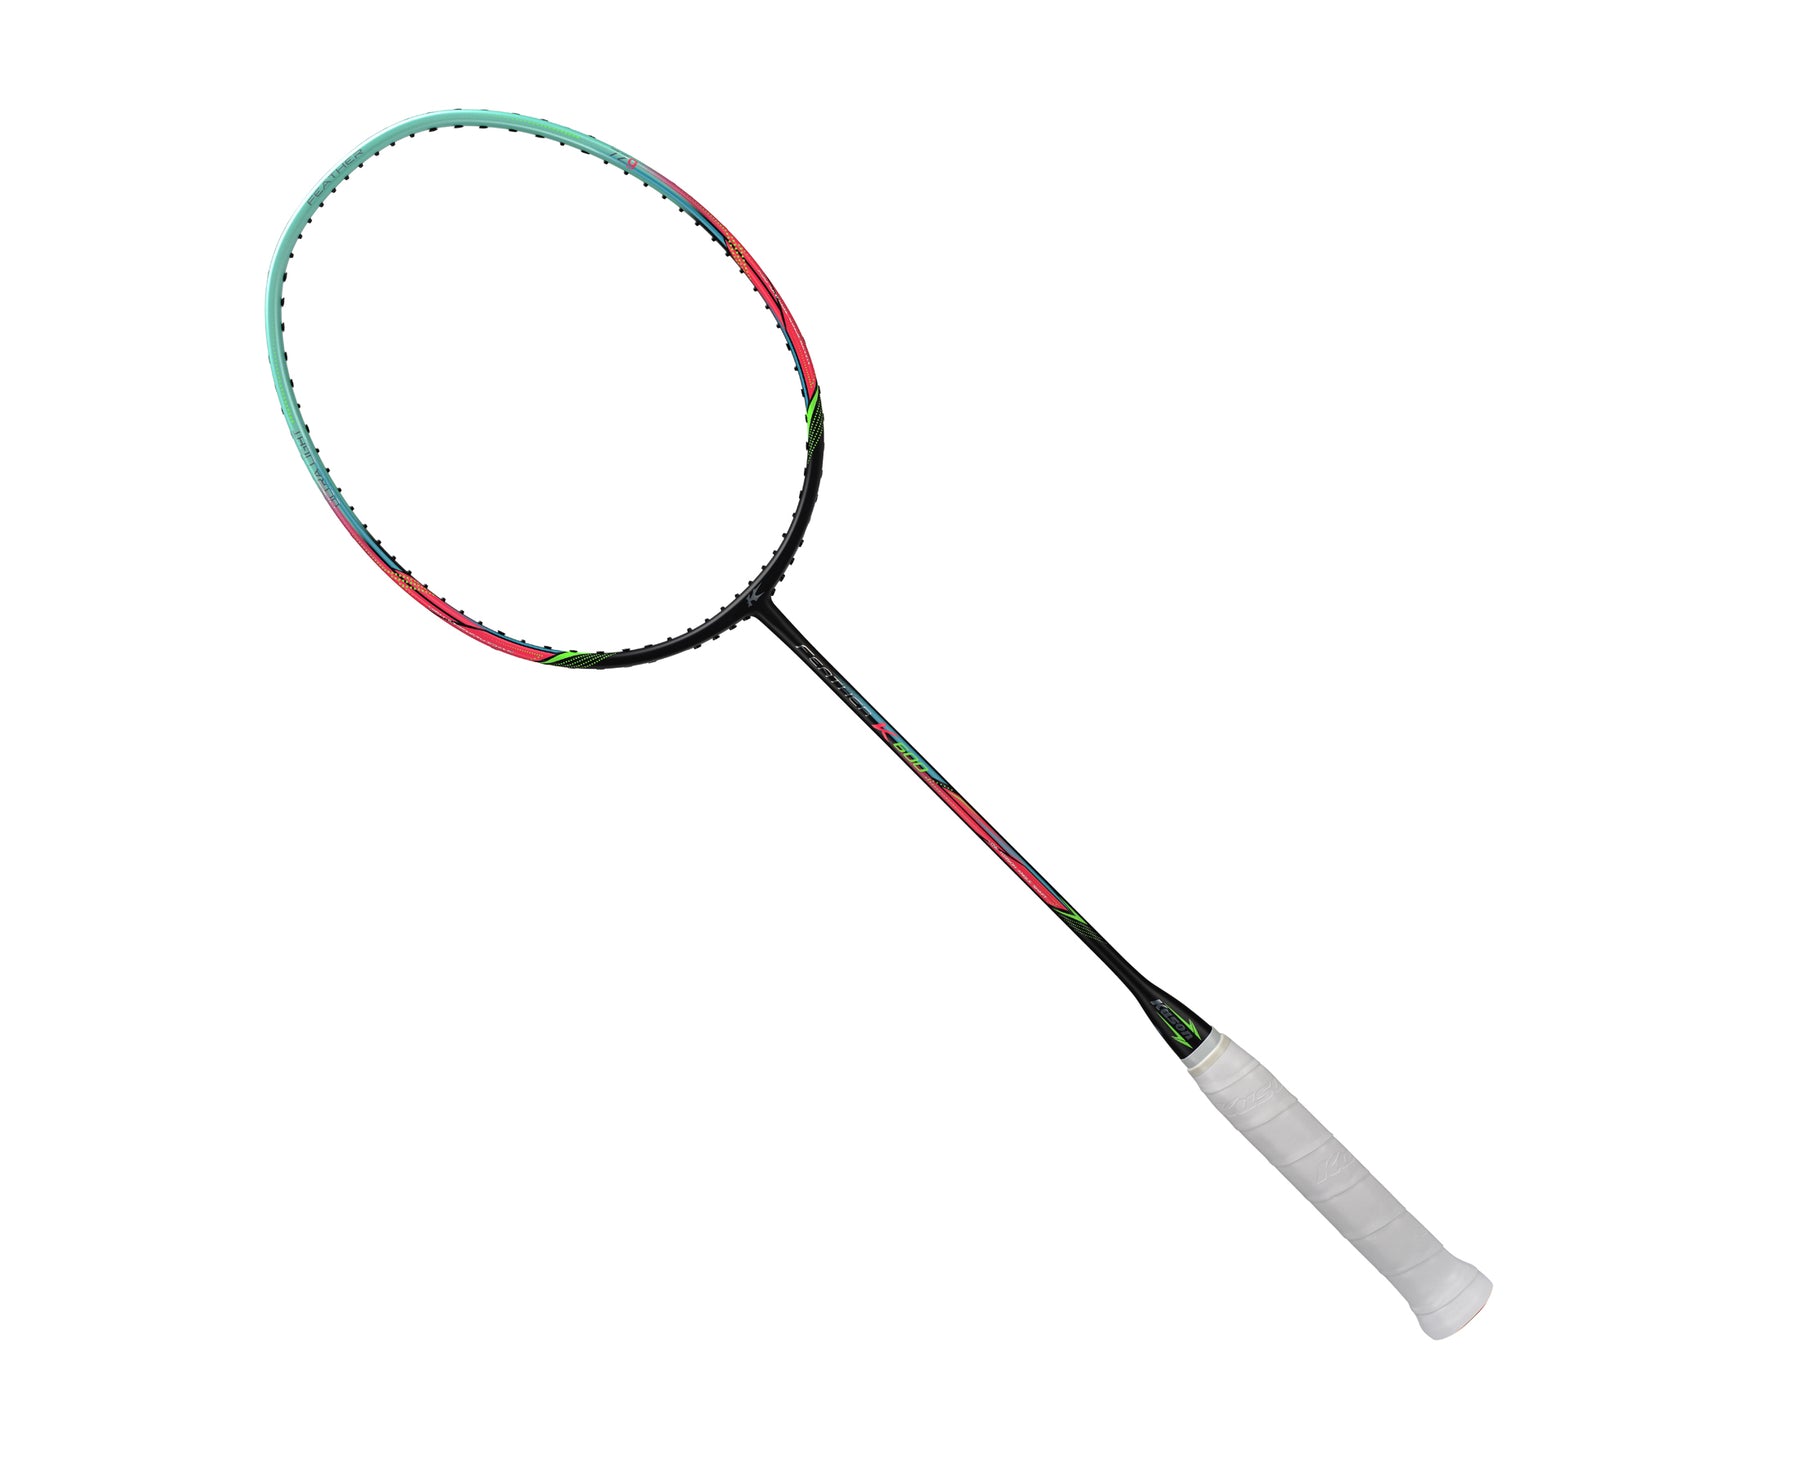 Kason K600 Featherlight Badminton Racket, Lightweight and powerful